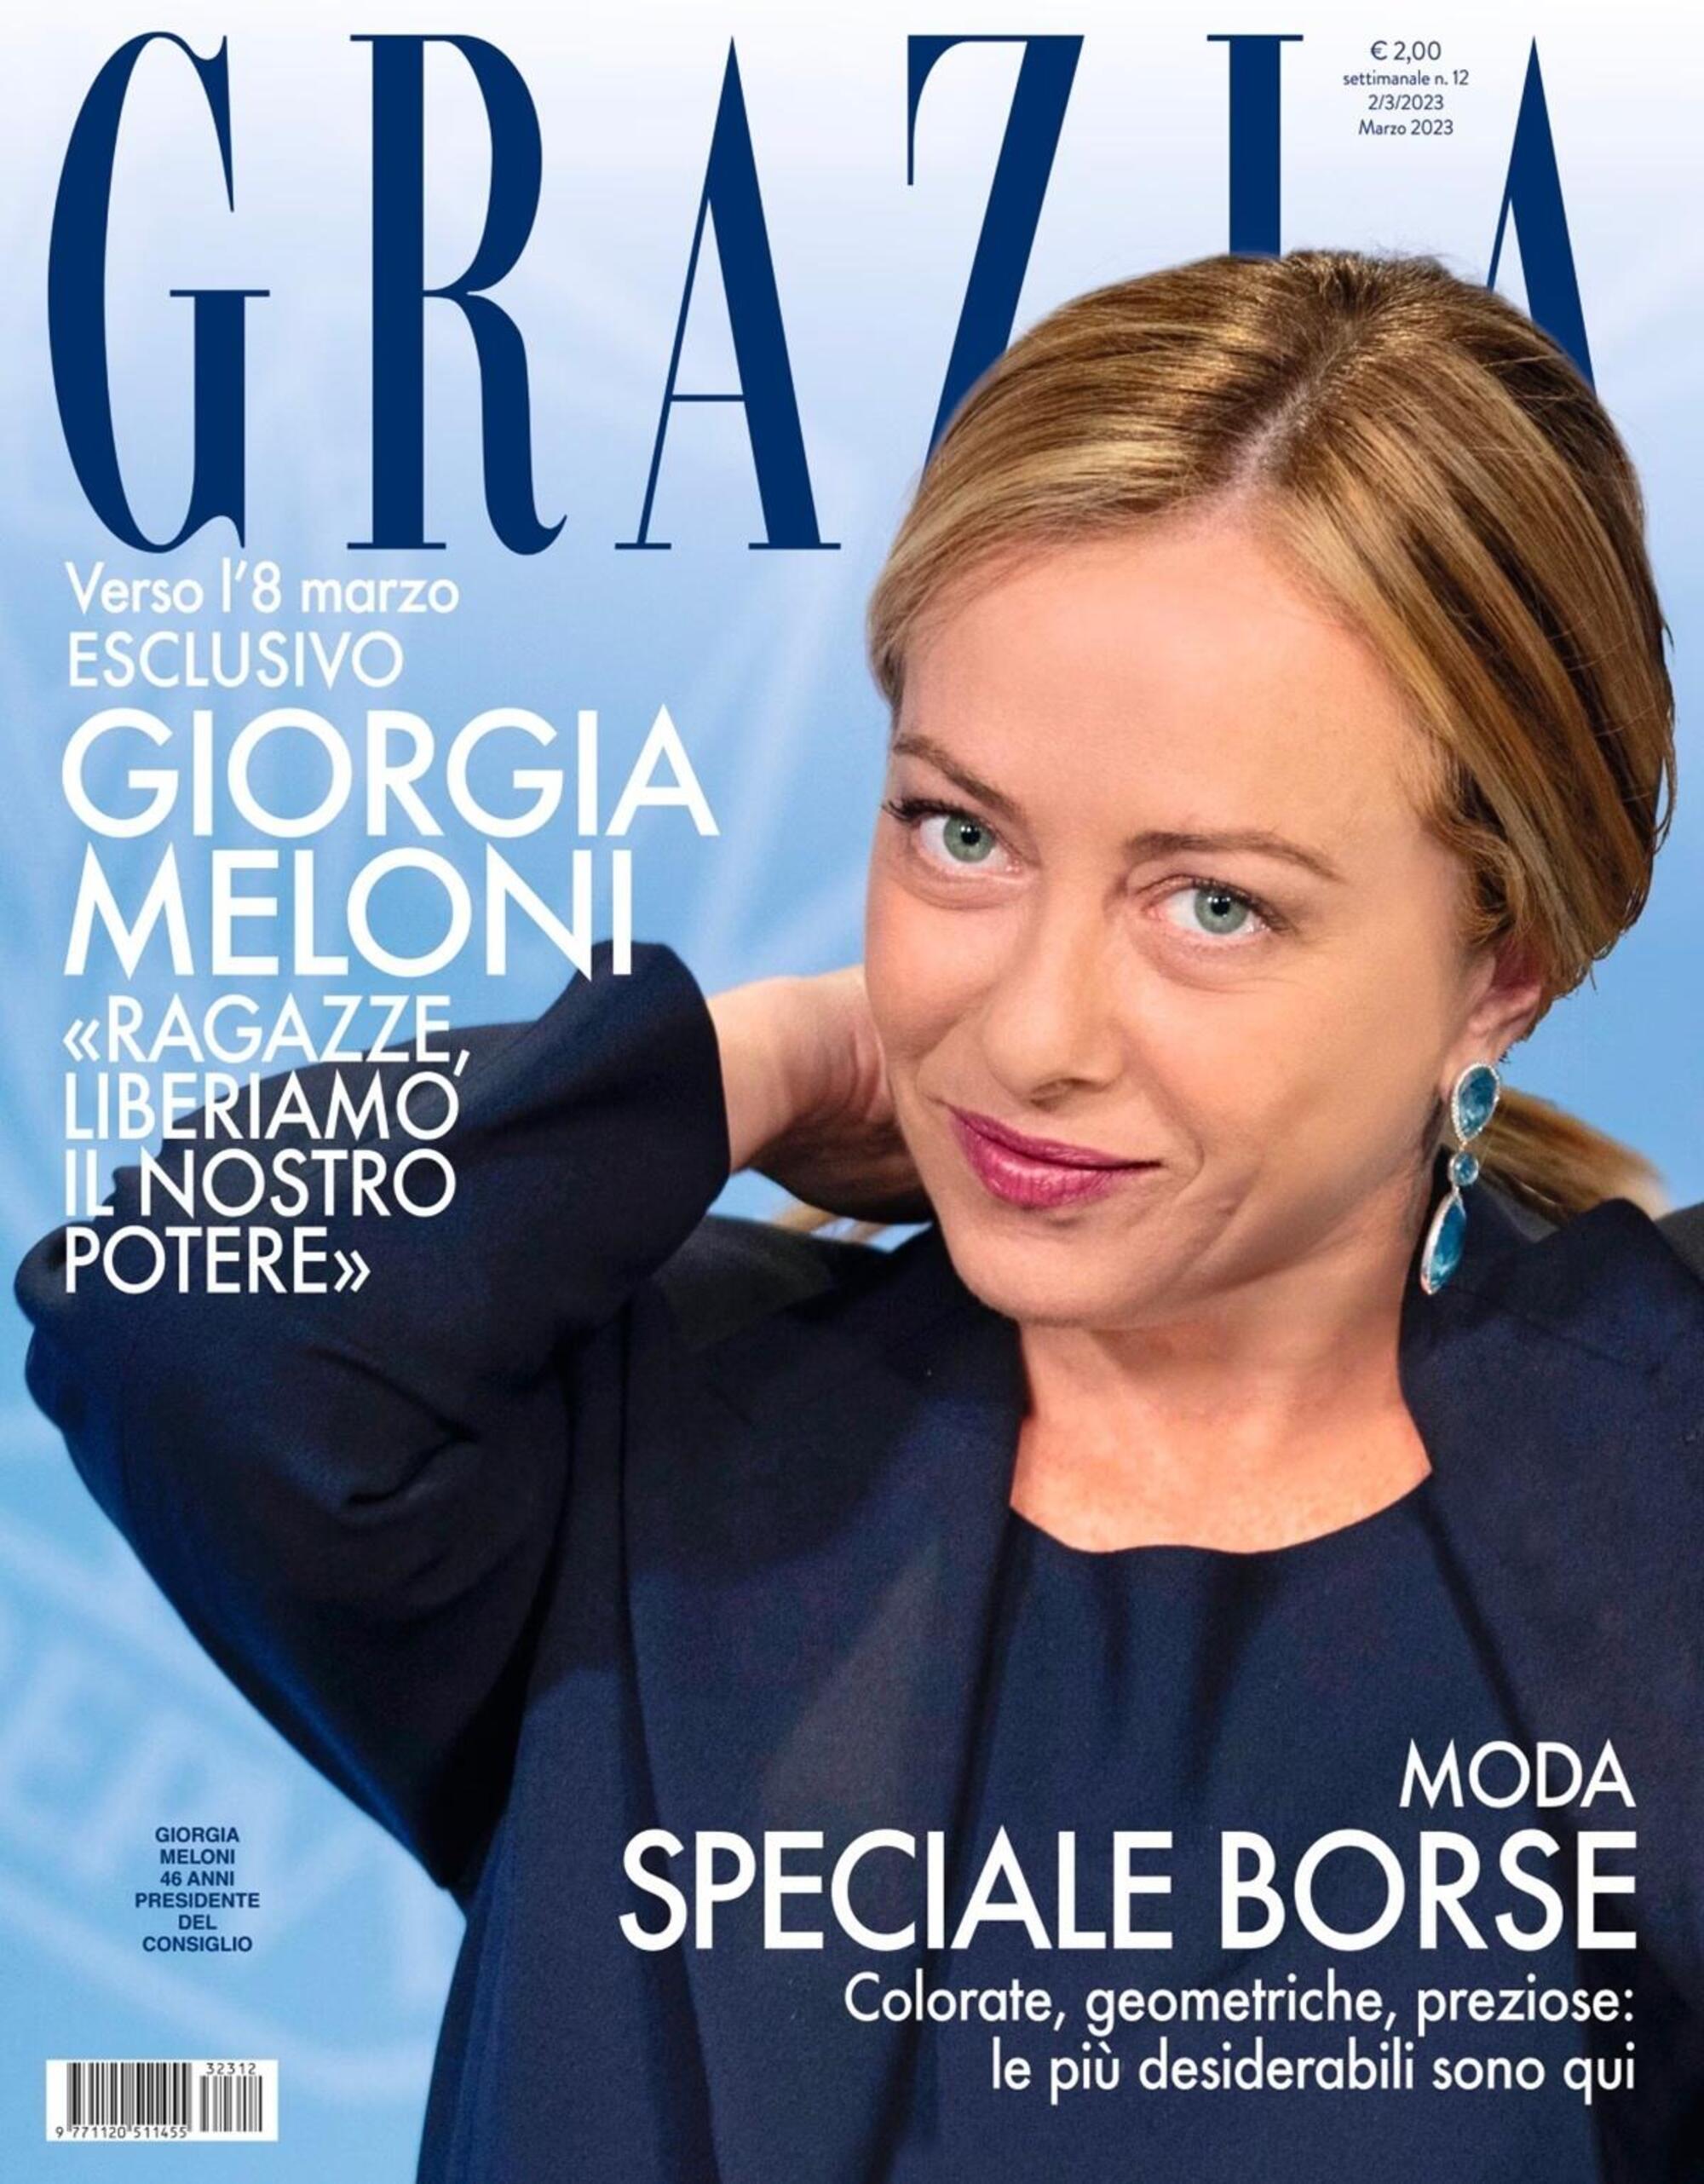 La copertina di Grazia dedicata a Giorgia Meloni